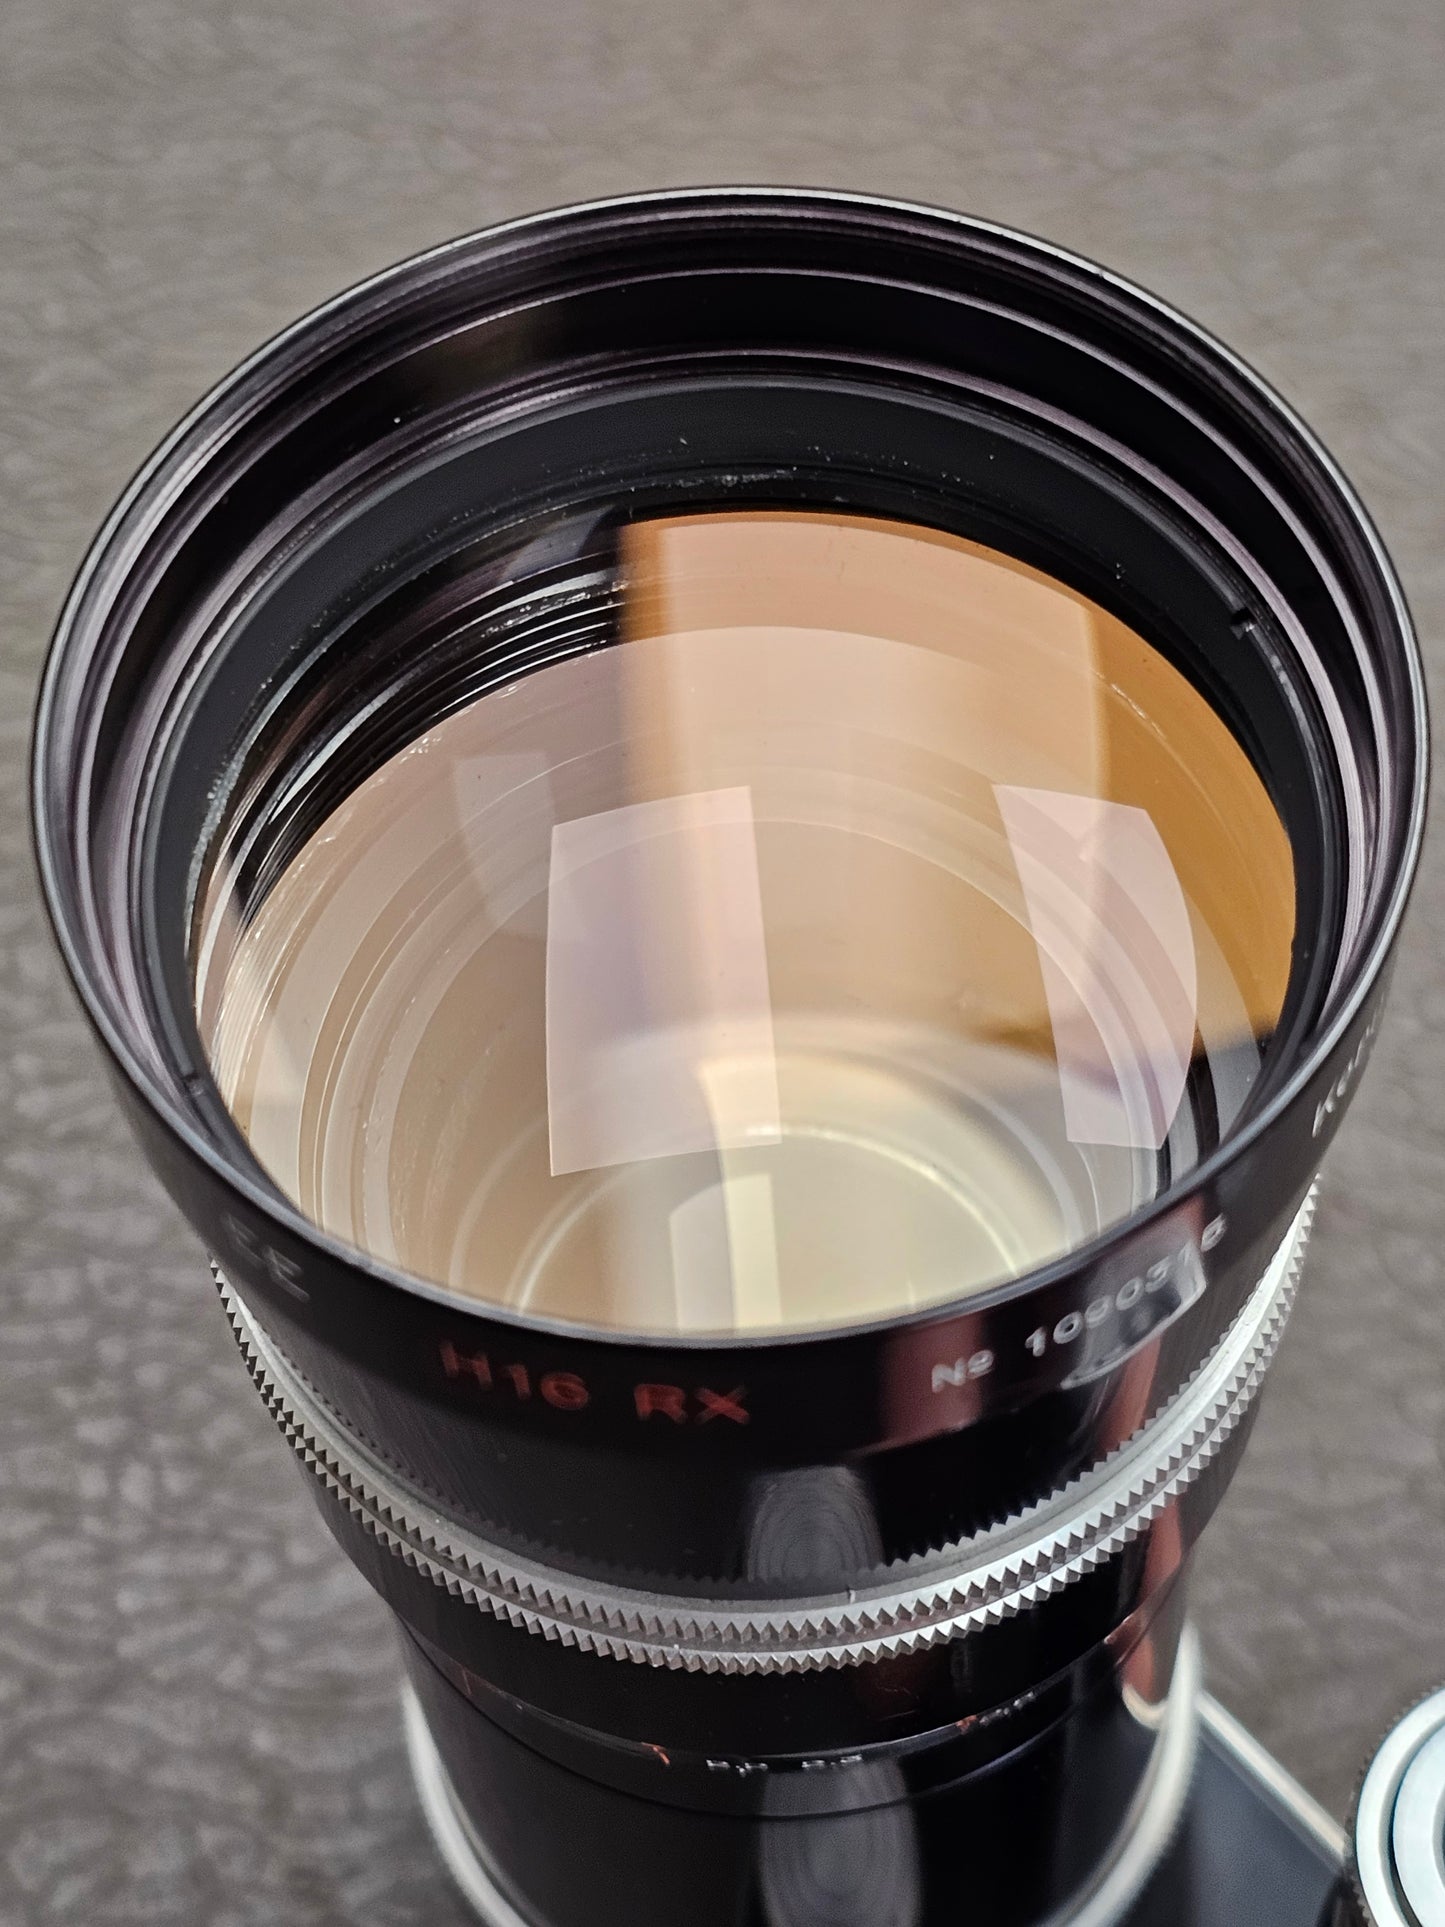 Kern Vario-Switar 18-86mm EE f/2.5 H16 RX C-Mount Zoom Lens S# 1090315